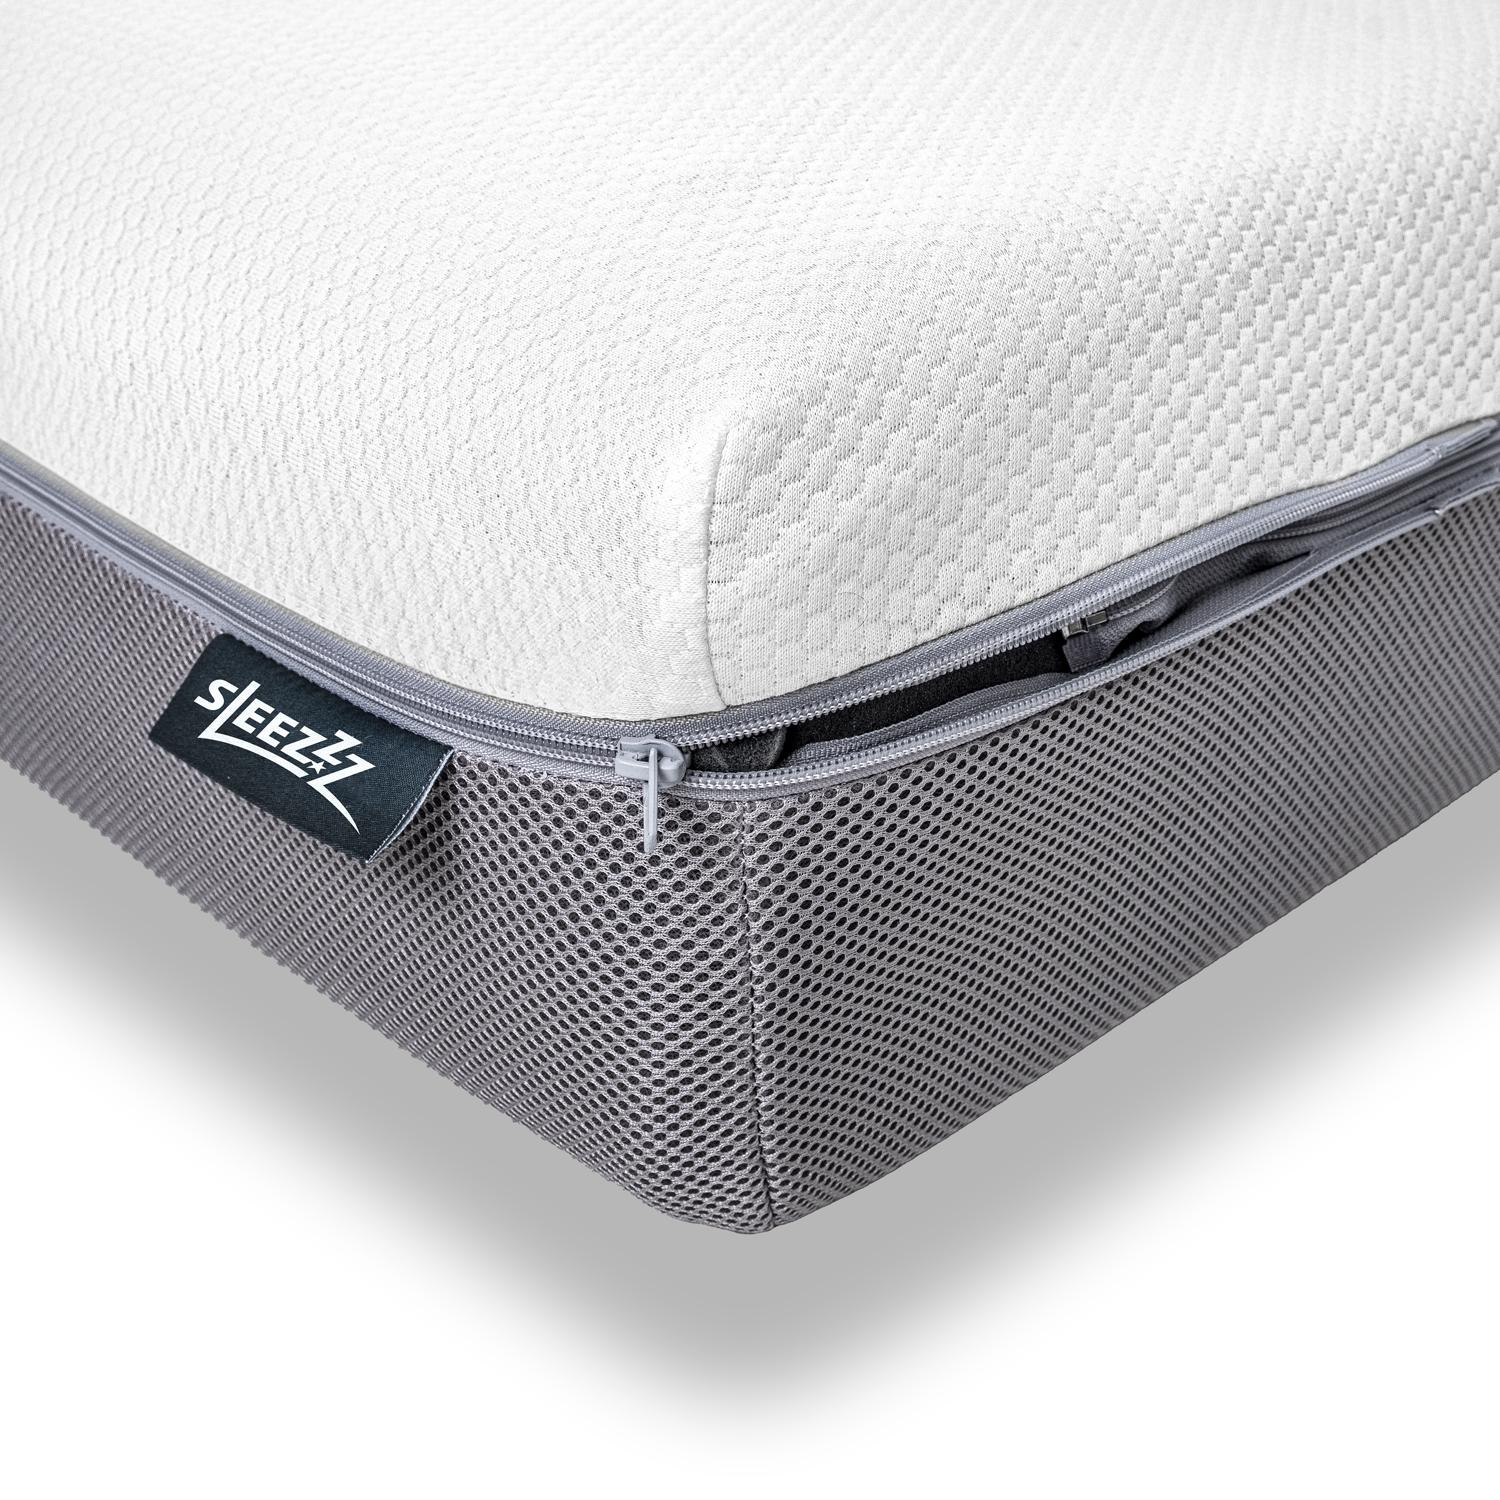 Sleezzz Premium viskoelastik yatak 140 x 200 cm, yükseklik 20 cm, sertlik seviyesi H2/H3, ters çevrilebilir kulplu